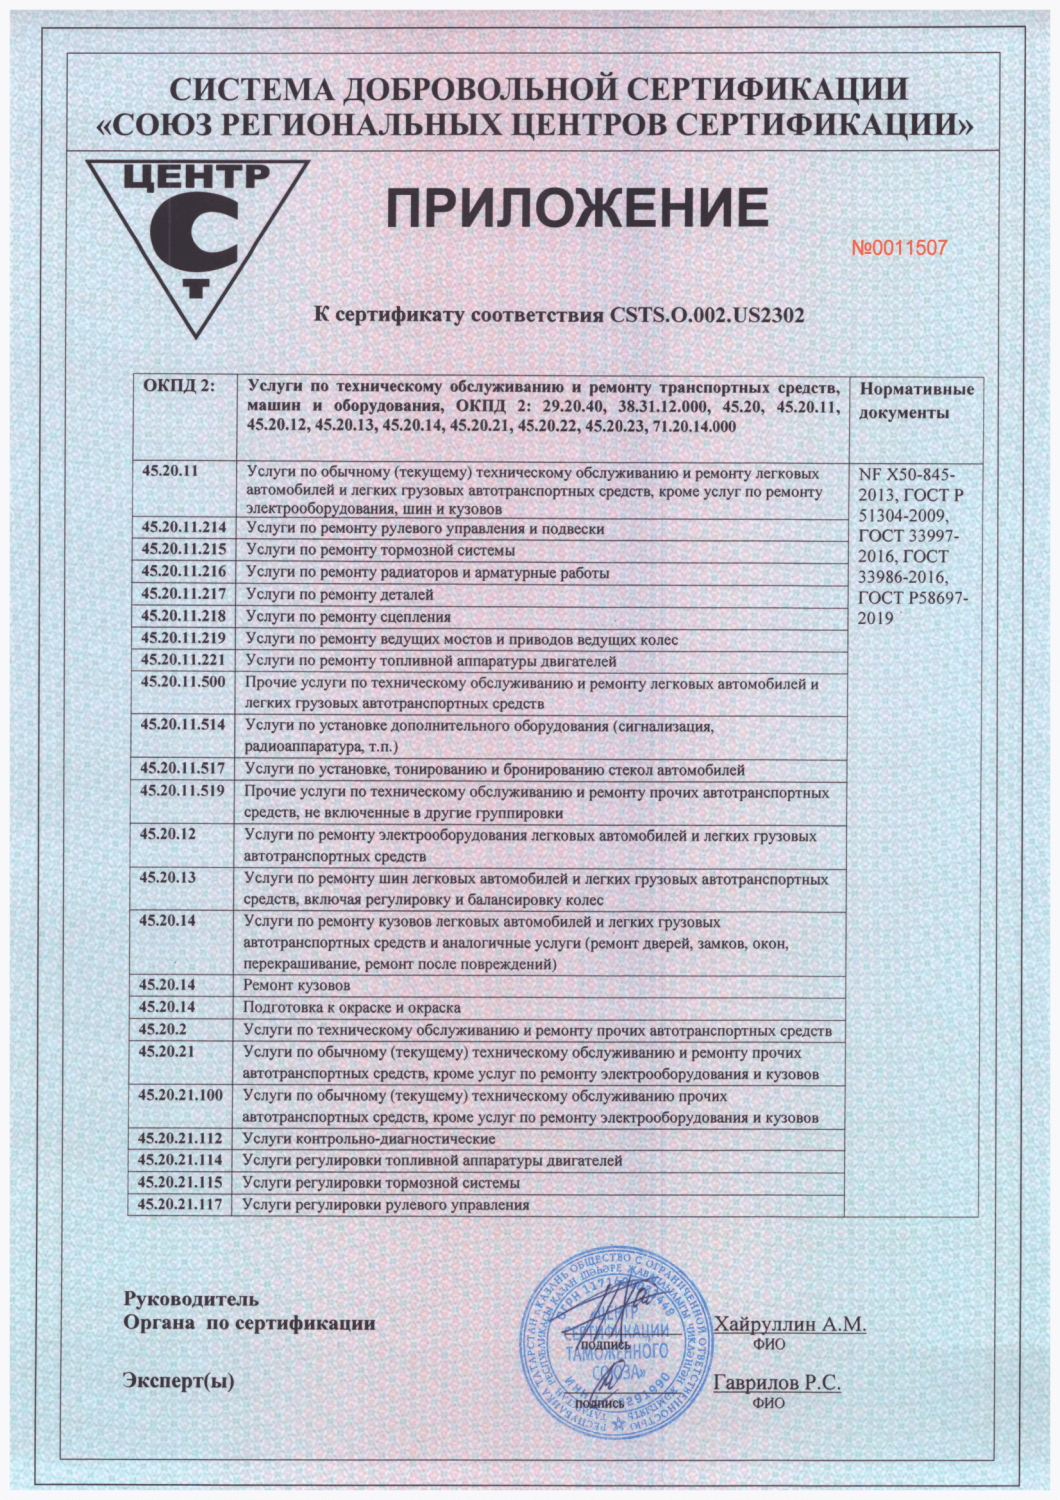 Сертификат соответствия на установку ГБО. Сертификат на газовое оборудование автомобиля. Сертификат на техническое обслуживание. Сертификат на ремонт и техническое обслуживание.